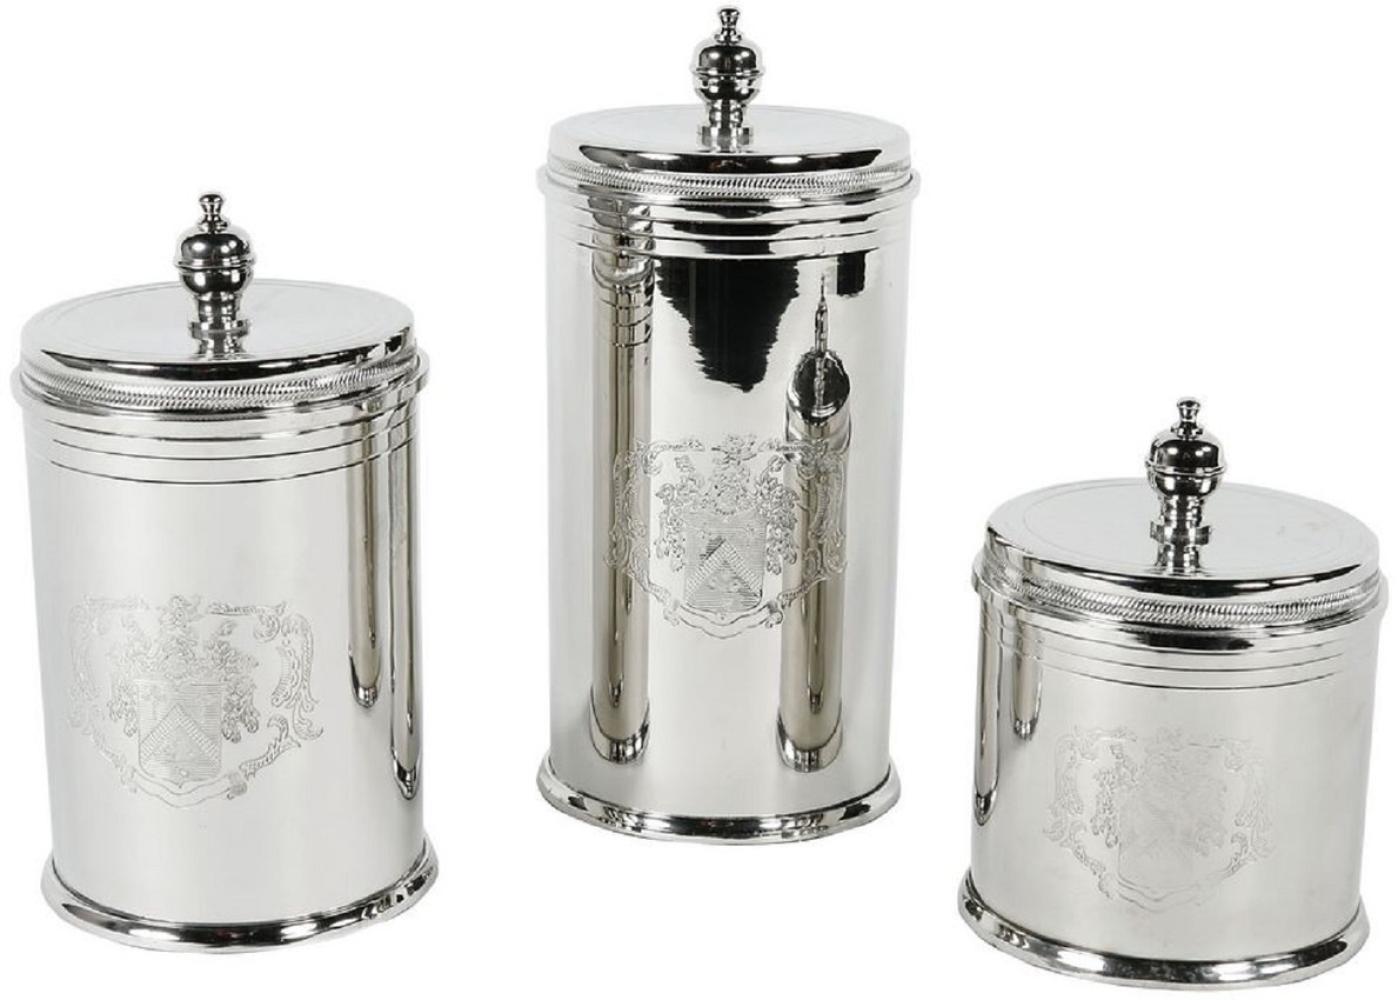 Casa Padrino Luxus Keksdosen Set Silber - 3 runde Messing Aufbewahrungsdosen mit Deckel - Hotel & Restaurant Accessoires Bild 1